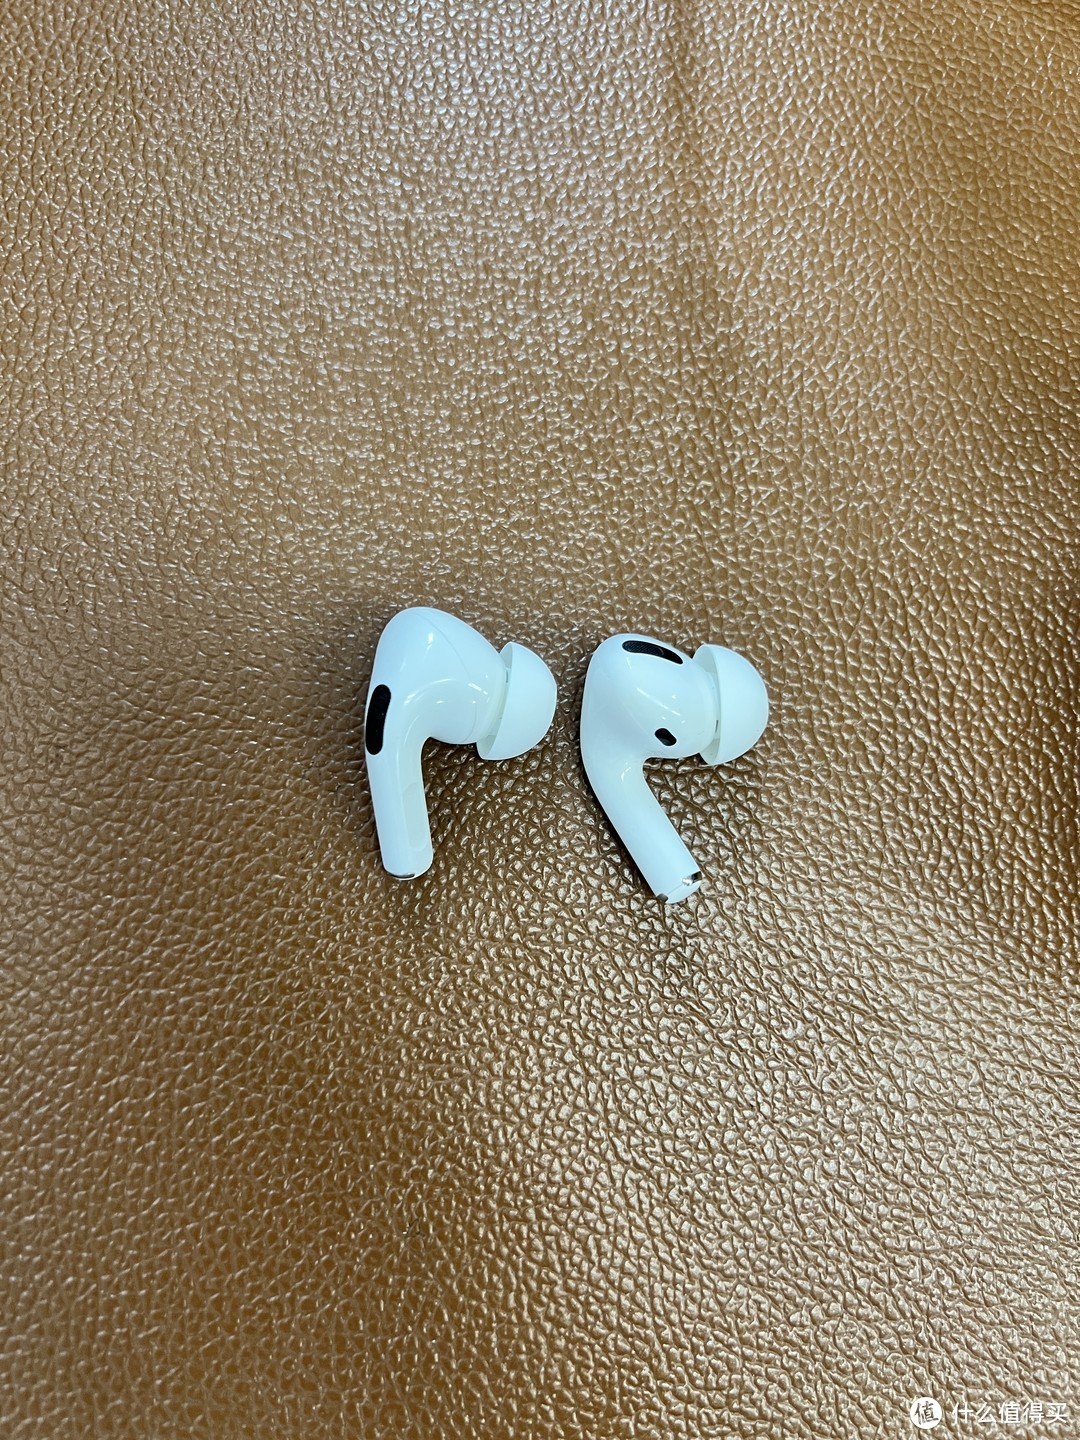 苹果Airpods Pro终于用到需要更换耳塞了